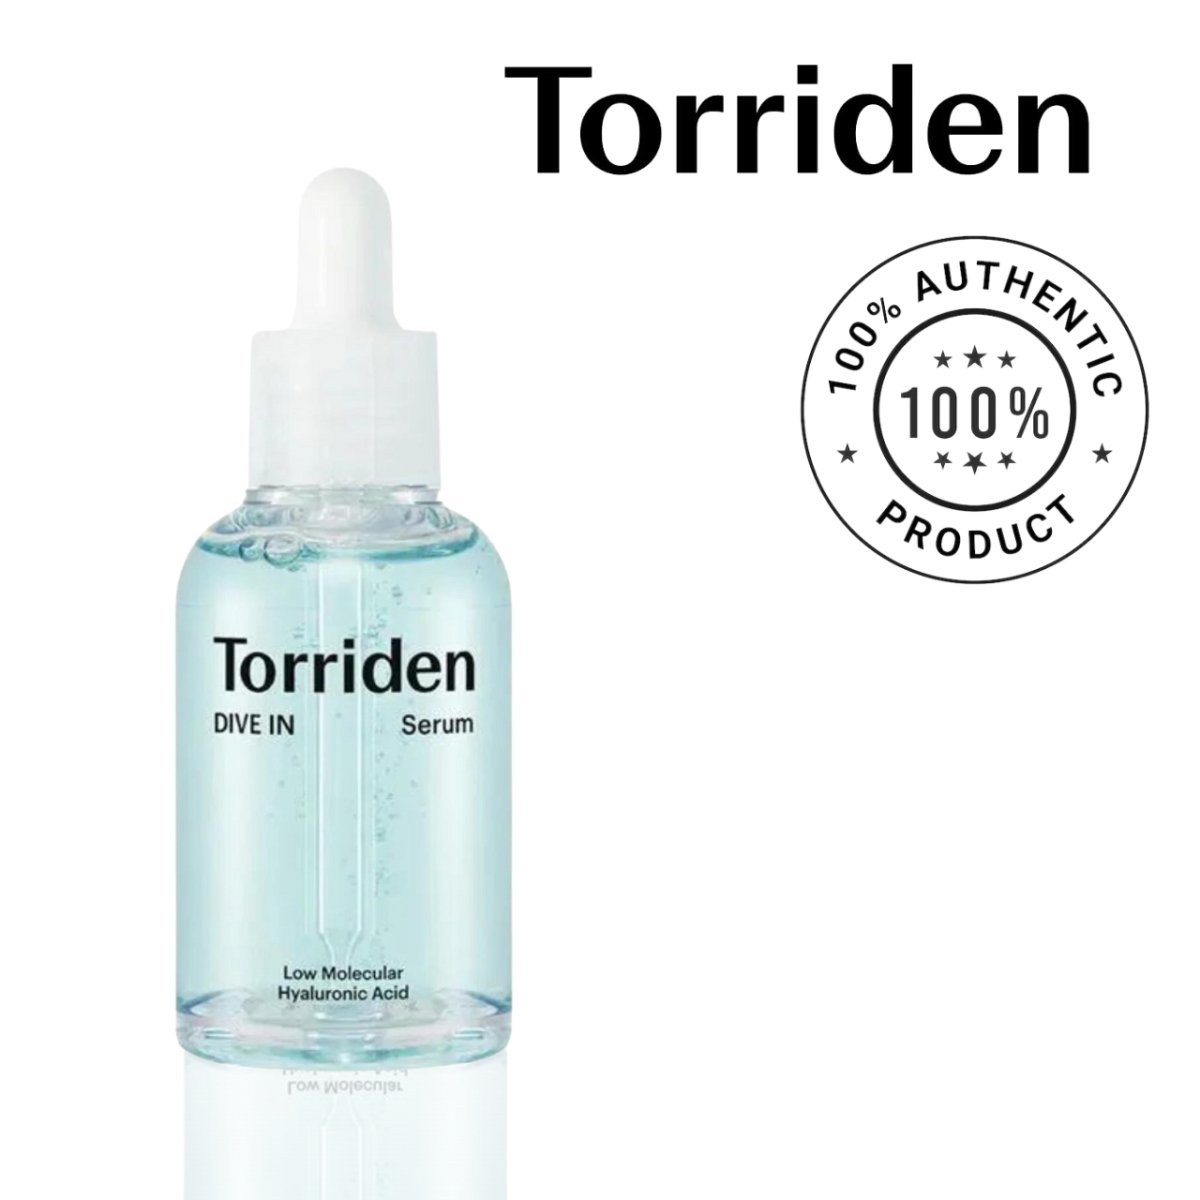 TORRIDEN Dive Low Molecule Hyaluronic Acid Serum